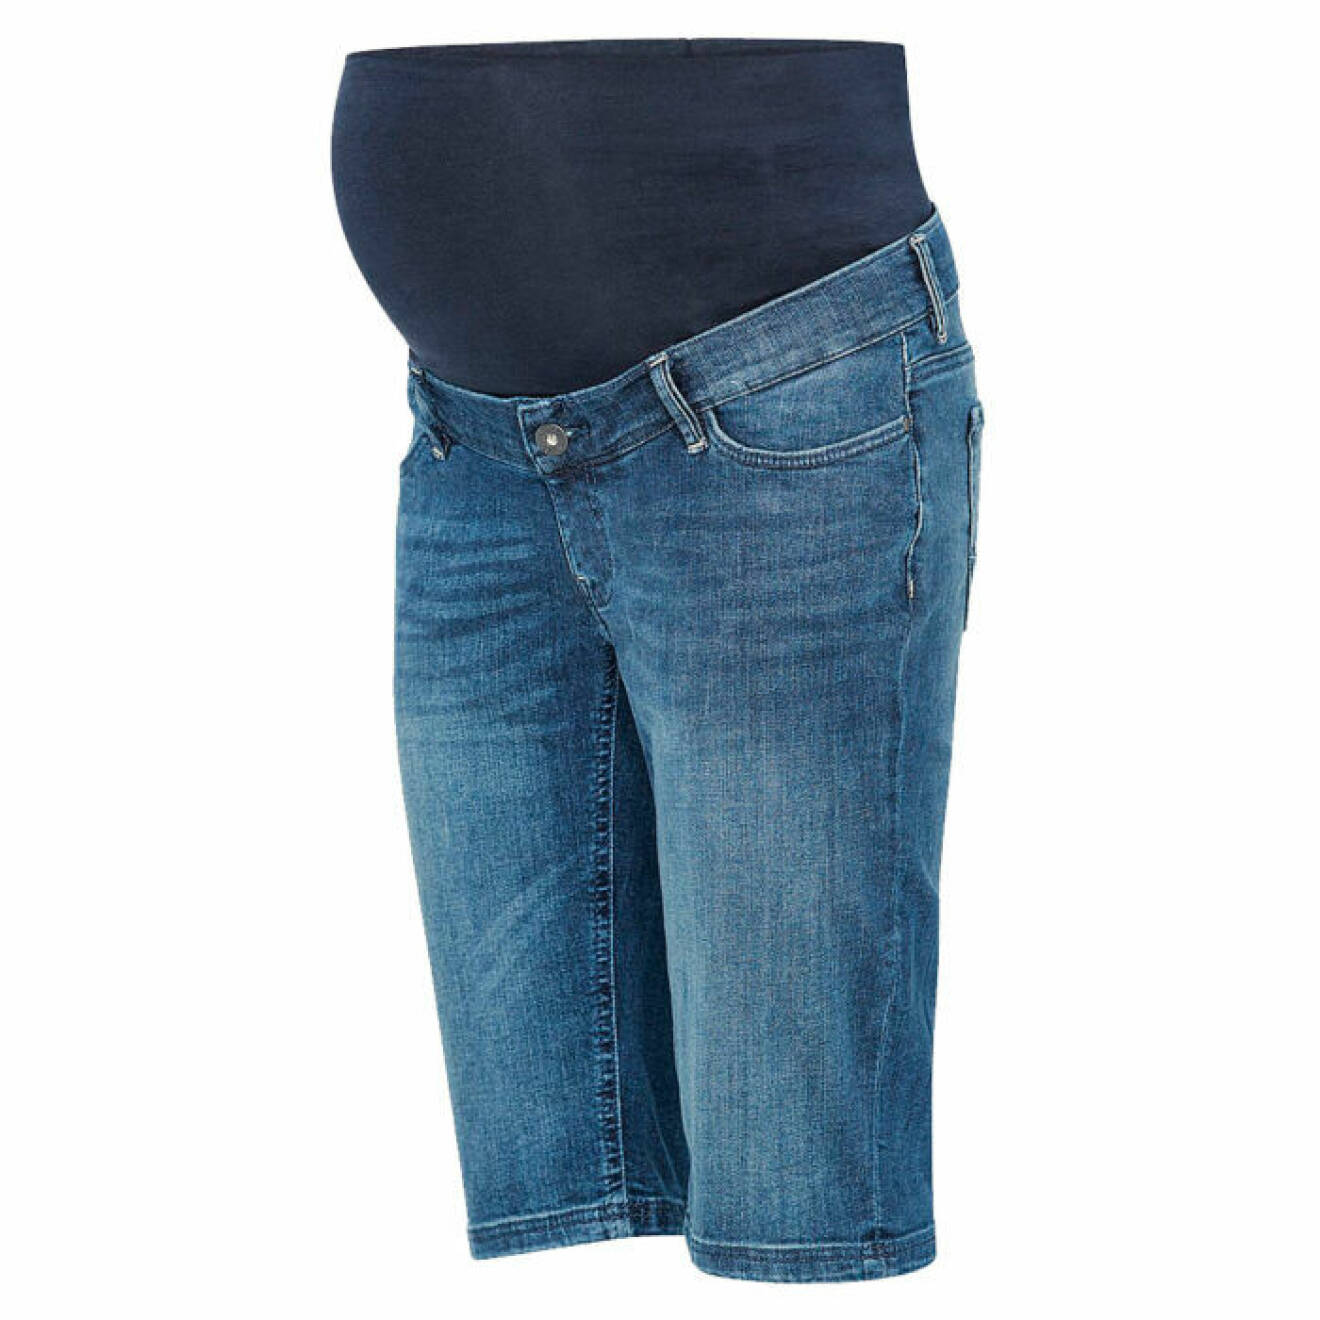 Långa jeansshorts från Ellos